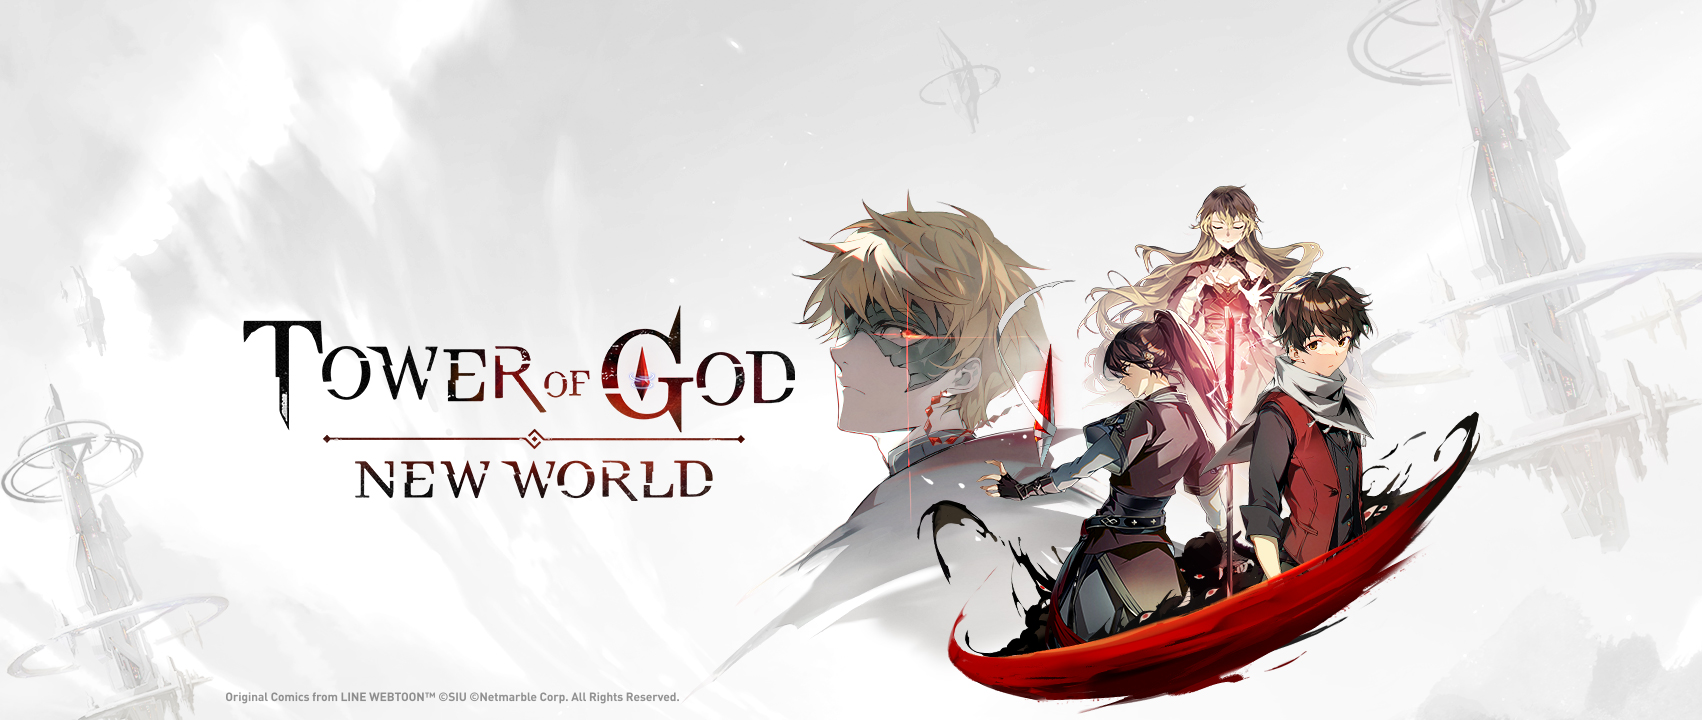 Tower Of God: New World】เกม Rpg ที่ฮิตๆ ทั้งโลก  ได้เปิดช่องโซเชียลอย่างเป็นทางการแล้ว โหลดได้วันไหน?  รองรับภาษาไทยหรือเปล่า? | วิธีโหลดเกมบน Pc ได้ฟรีด้วย Noxplayer×Android12!!  – Noxplayer